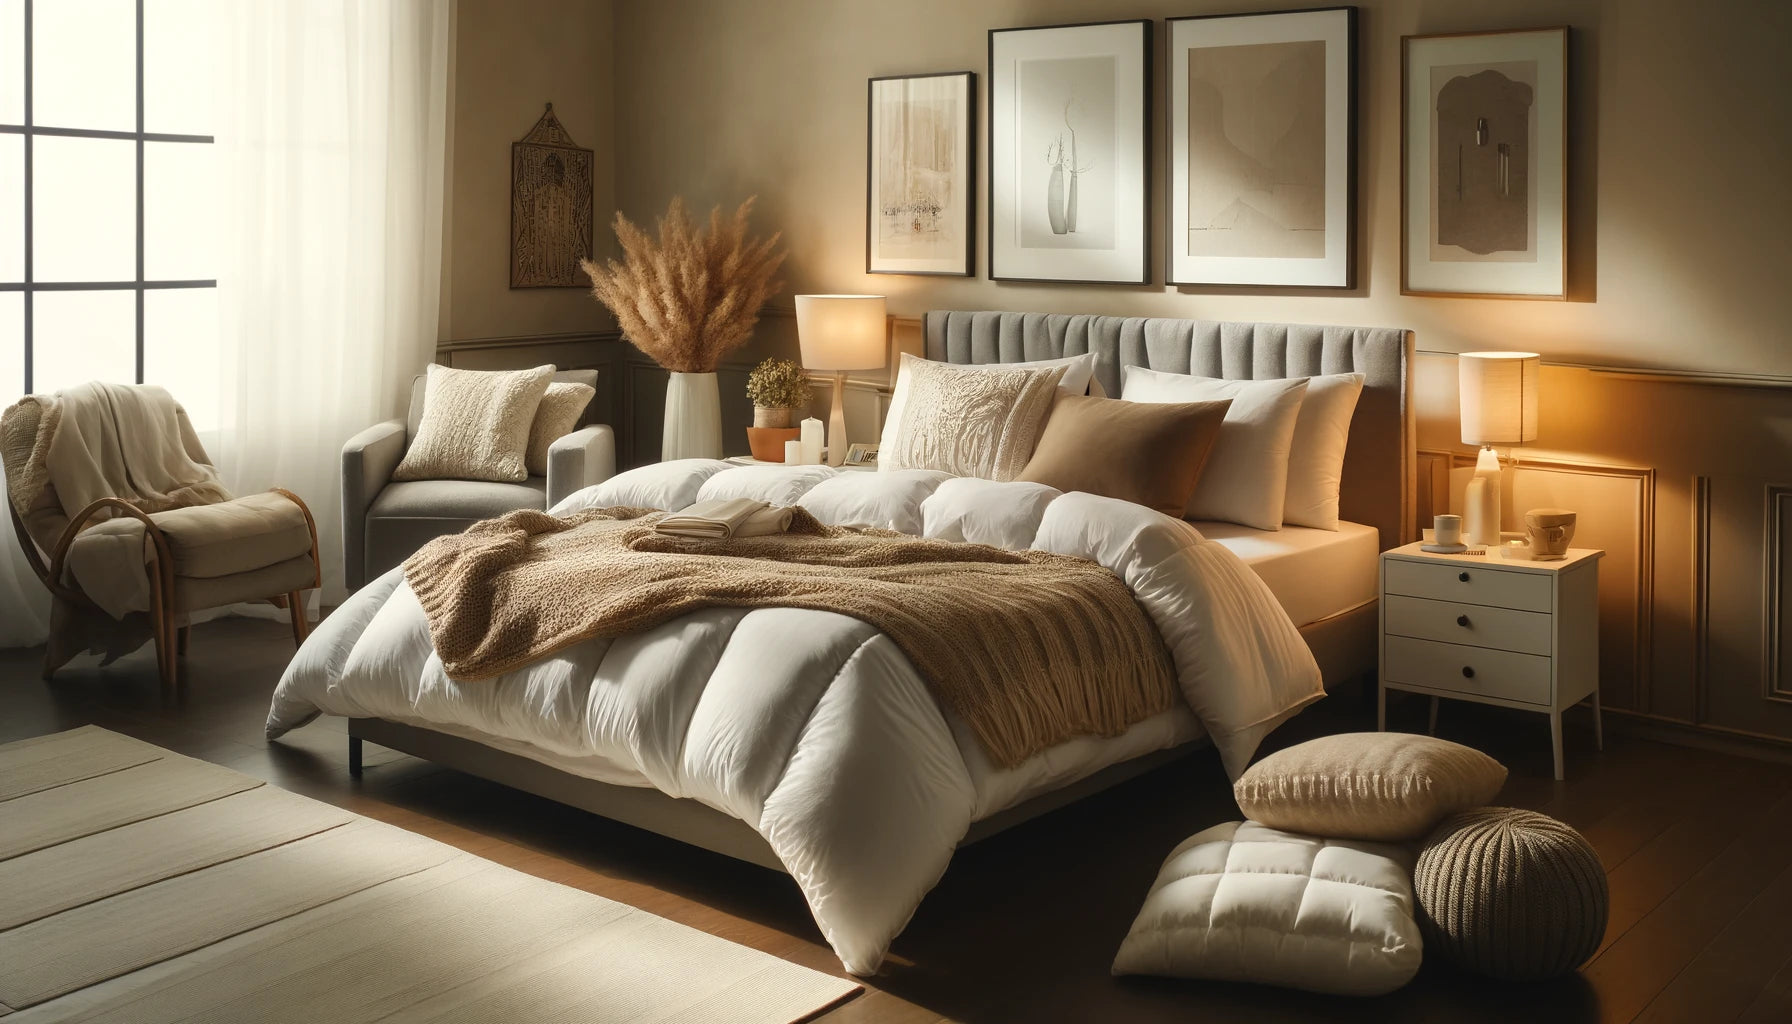 Duvet vs Comforter vs Blanket: Choosing the Best Bedding for Comfort